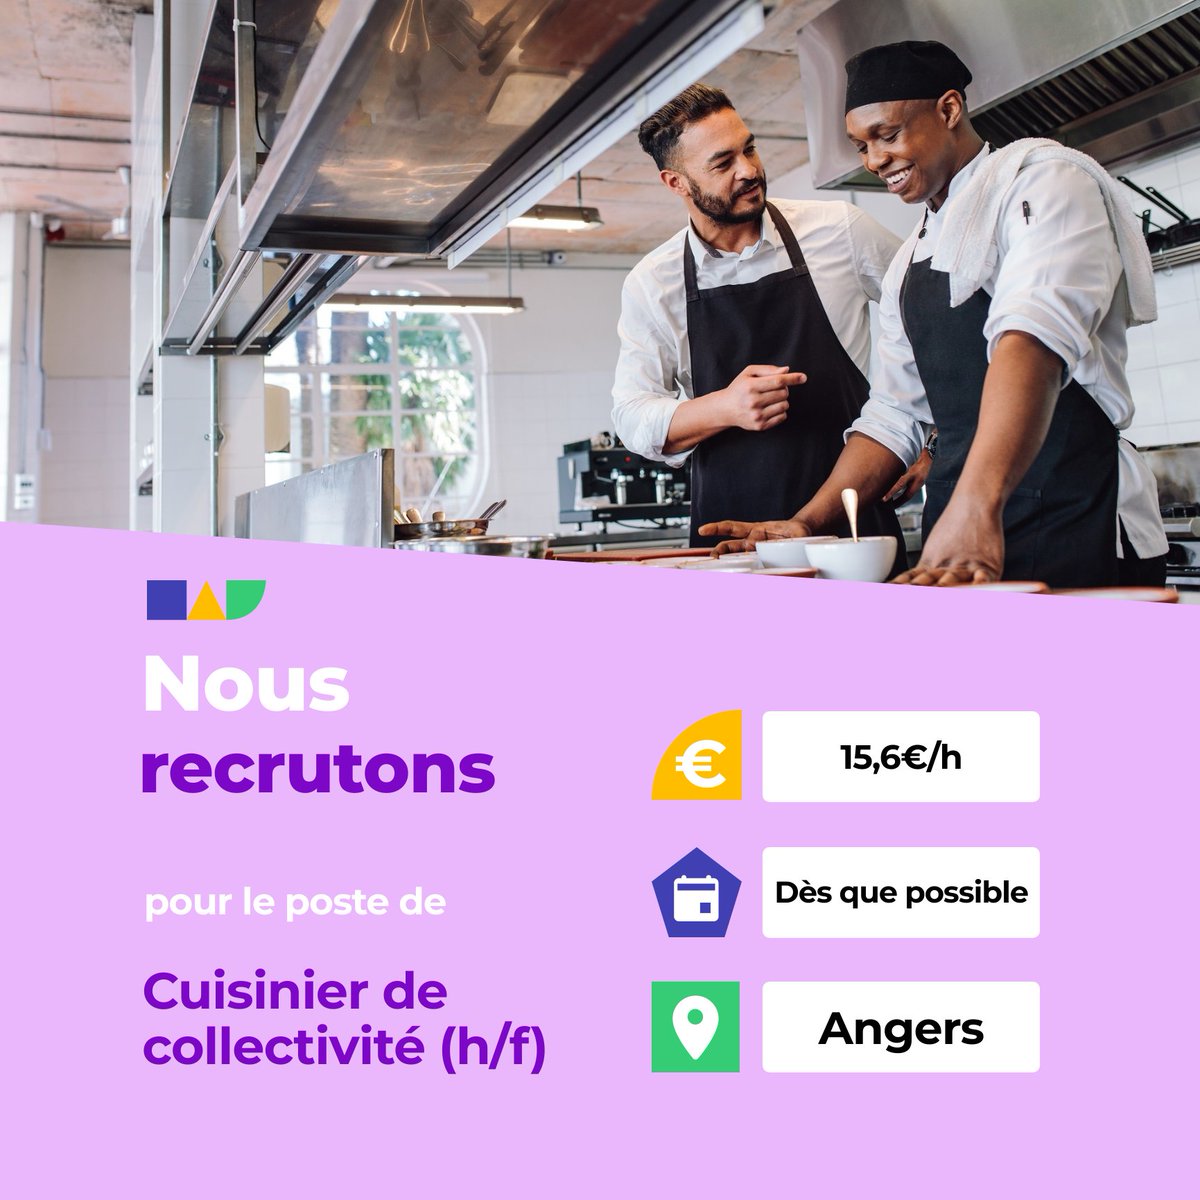 🛎️ Nouvelle offre d'emploi : Cuisinier de collectivité (h/f) 🌎 Angers (49000) 📅 Démarrage dans les 7 prochains jours 👉 Plus d'infos : jobs.iziwork.com/fr/offre-emplo… #recrutement #intérim #emploi #OffreEmploi #job #iziwork